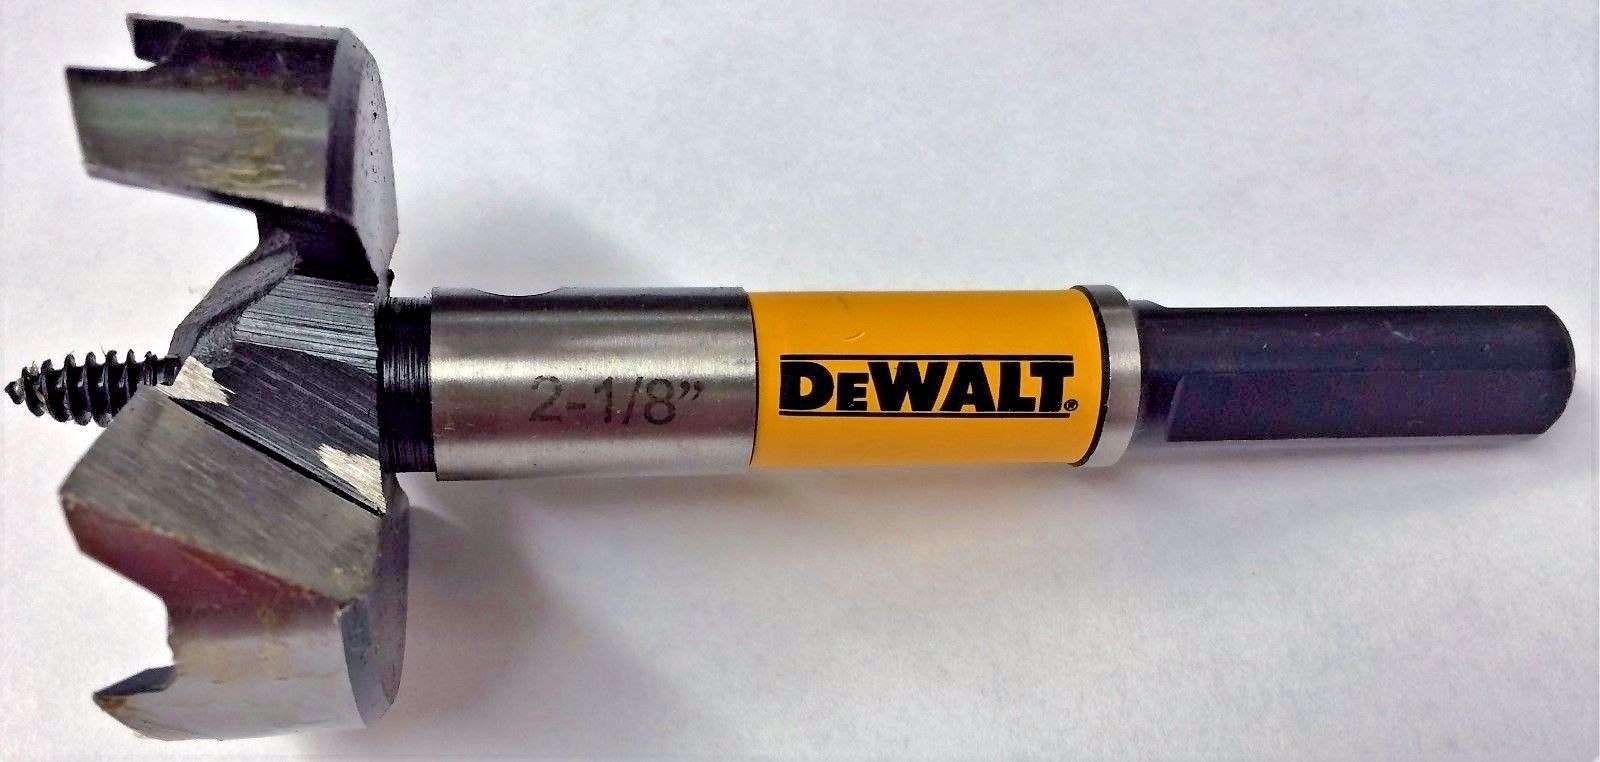 Dewalt DW1637 2-1/8" Self Feed Wood Drill Bit